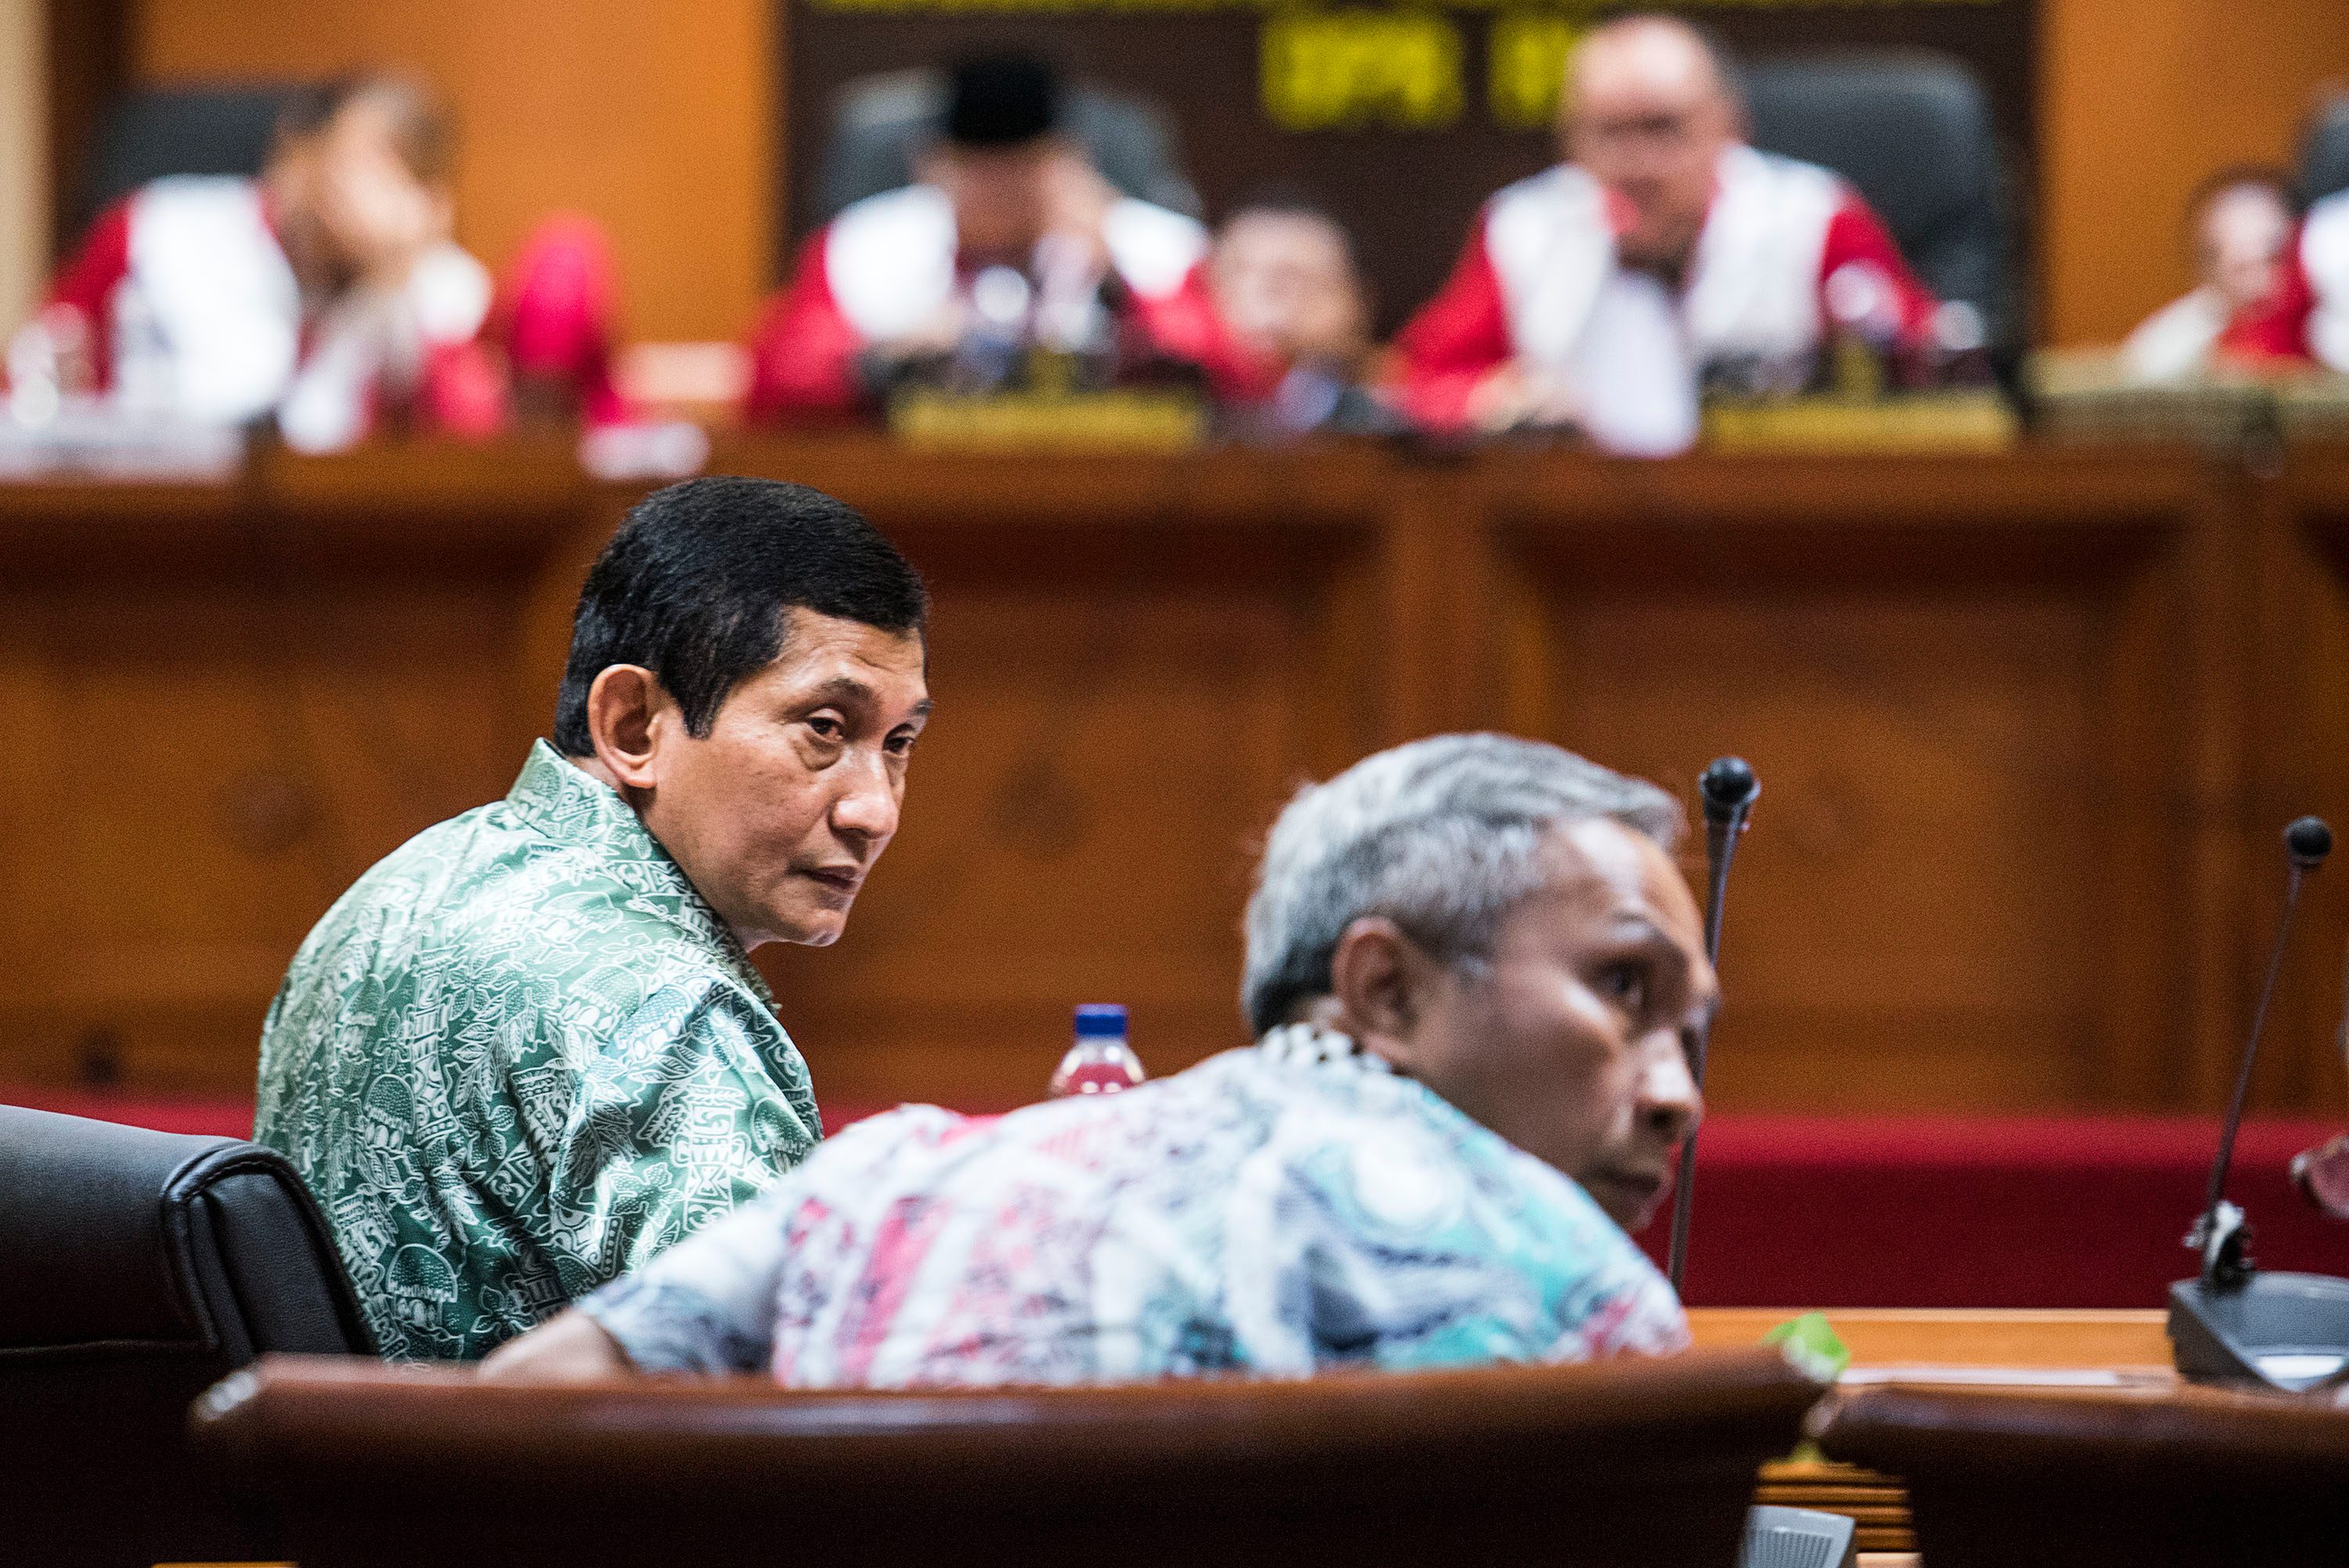 Presiden Direktur PT Freeport Indonesia Maroef Sjamsoeddin menghadiri sidang etik Mahkamah Kehormatan Dewan (MKD) DPR di kompleks Parlemen, Senayan, Jakarta, pada 3 Desember 2015. Foto oleh M. Agung Rajasa/Antara 